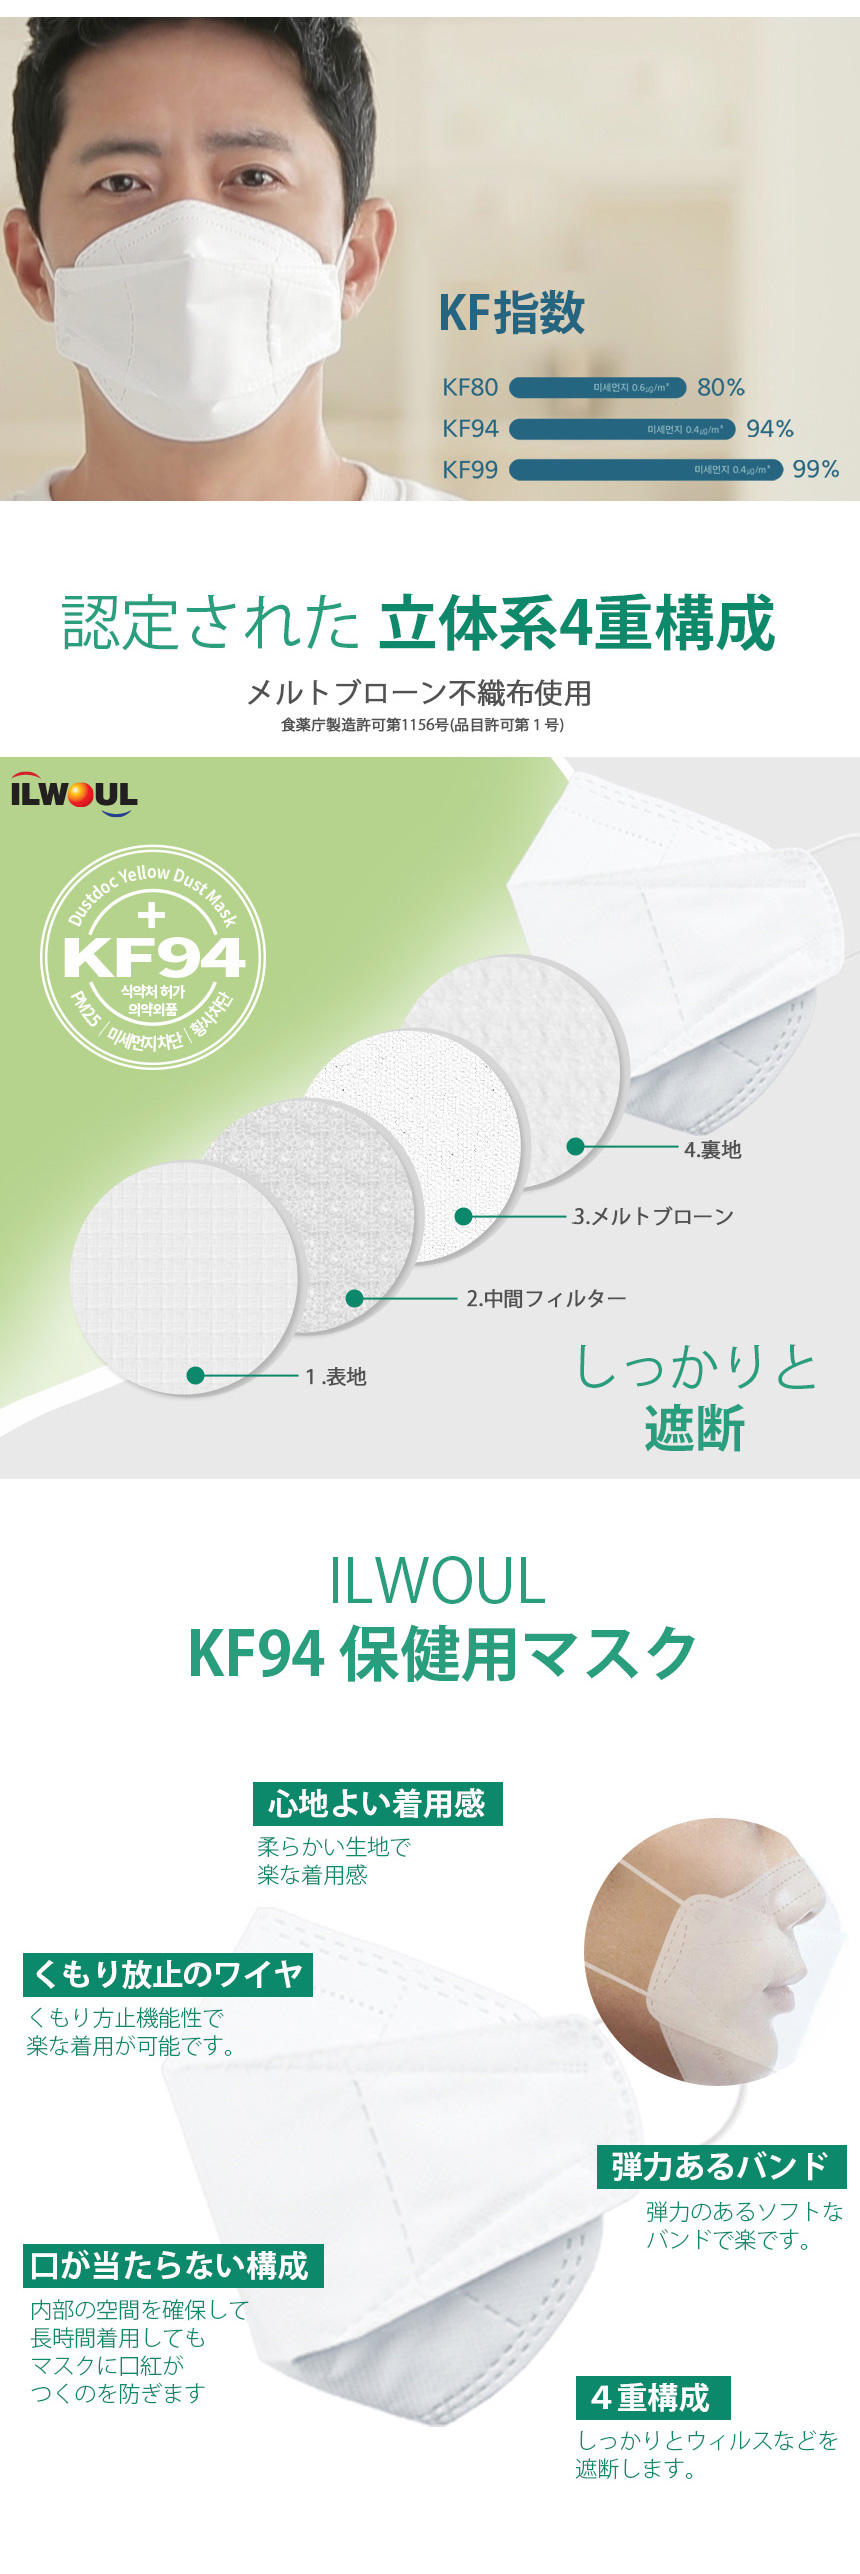 [KF94] 衛生高性能 韓国製 韓国マスク KF94 マスク